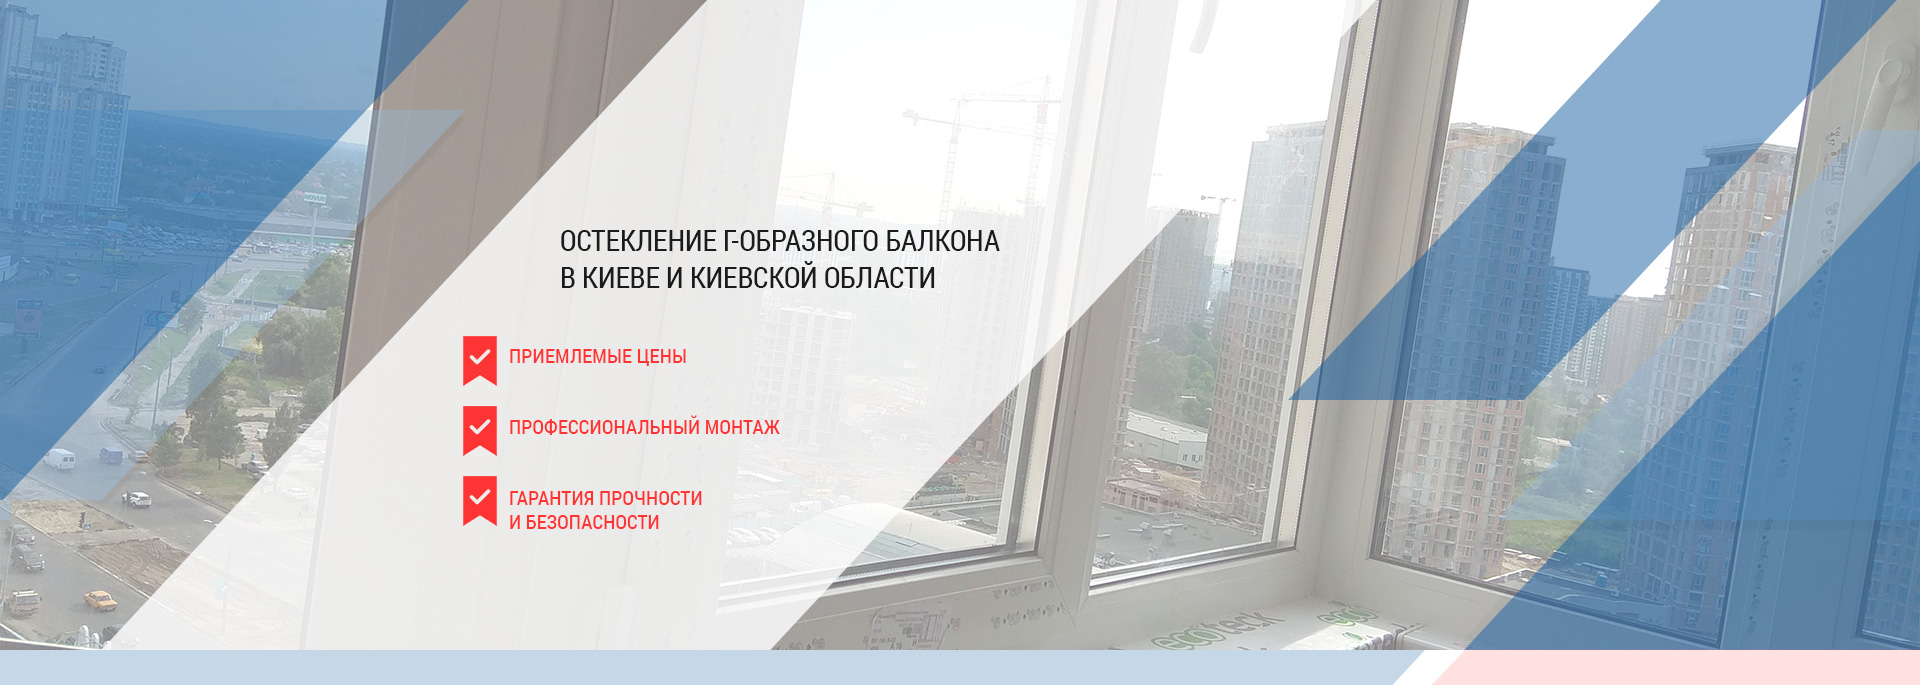 Остекление Г-образного балкона в Киеве